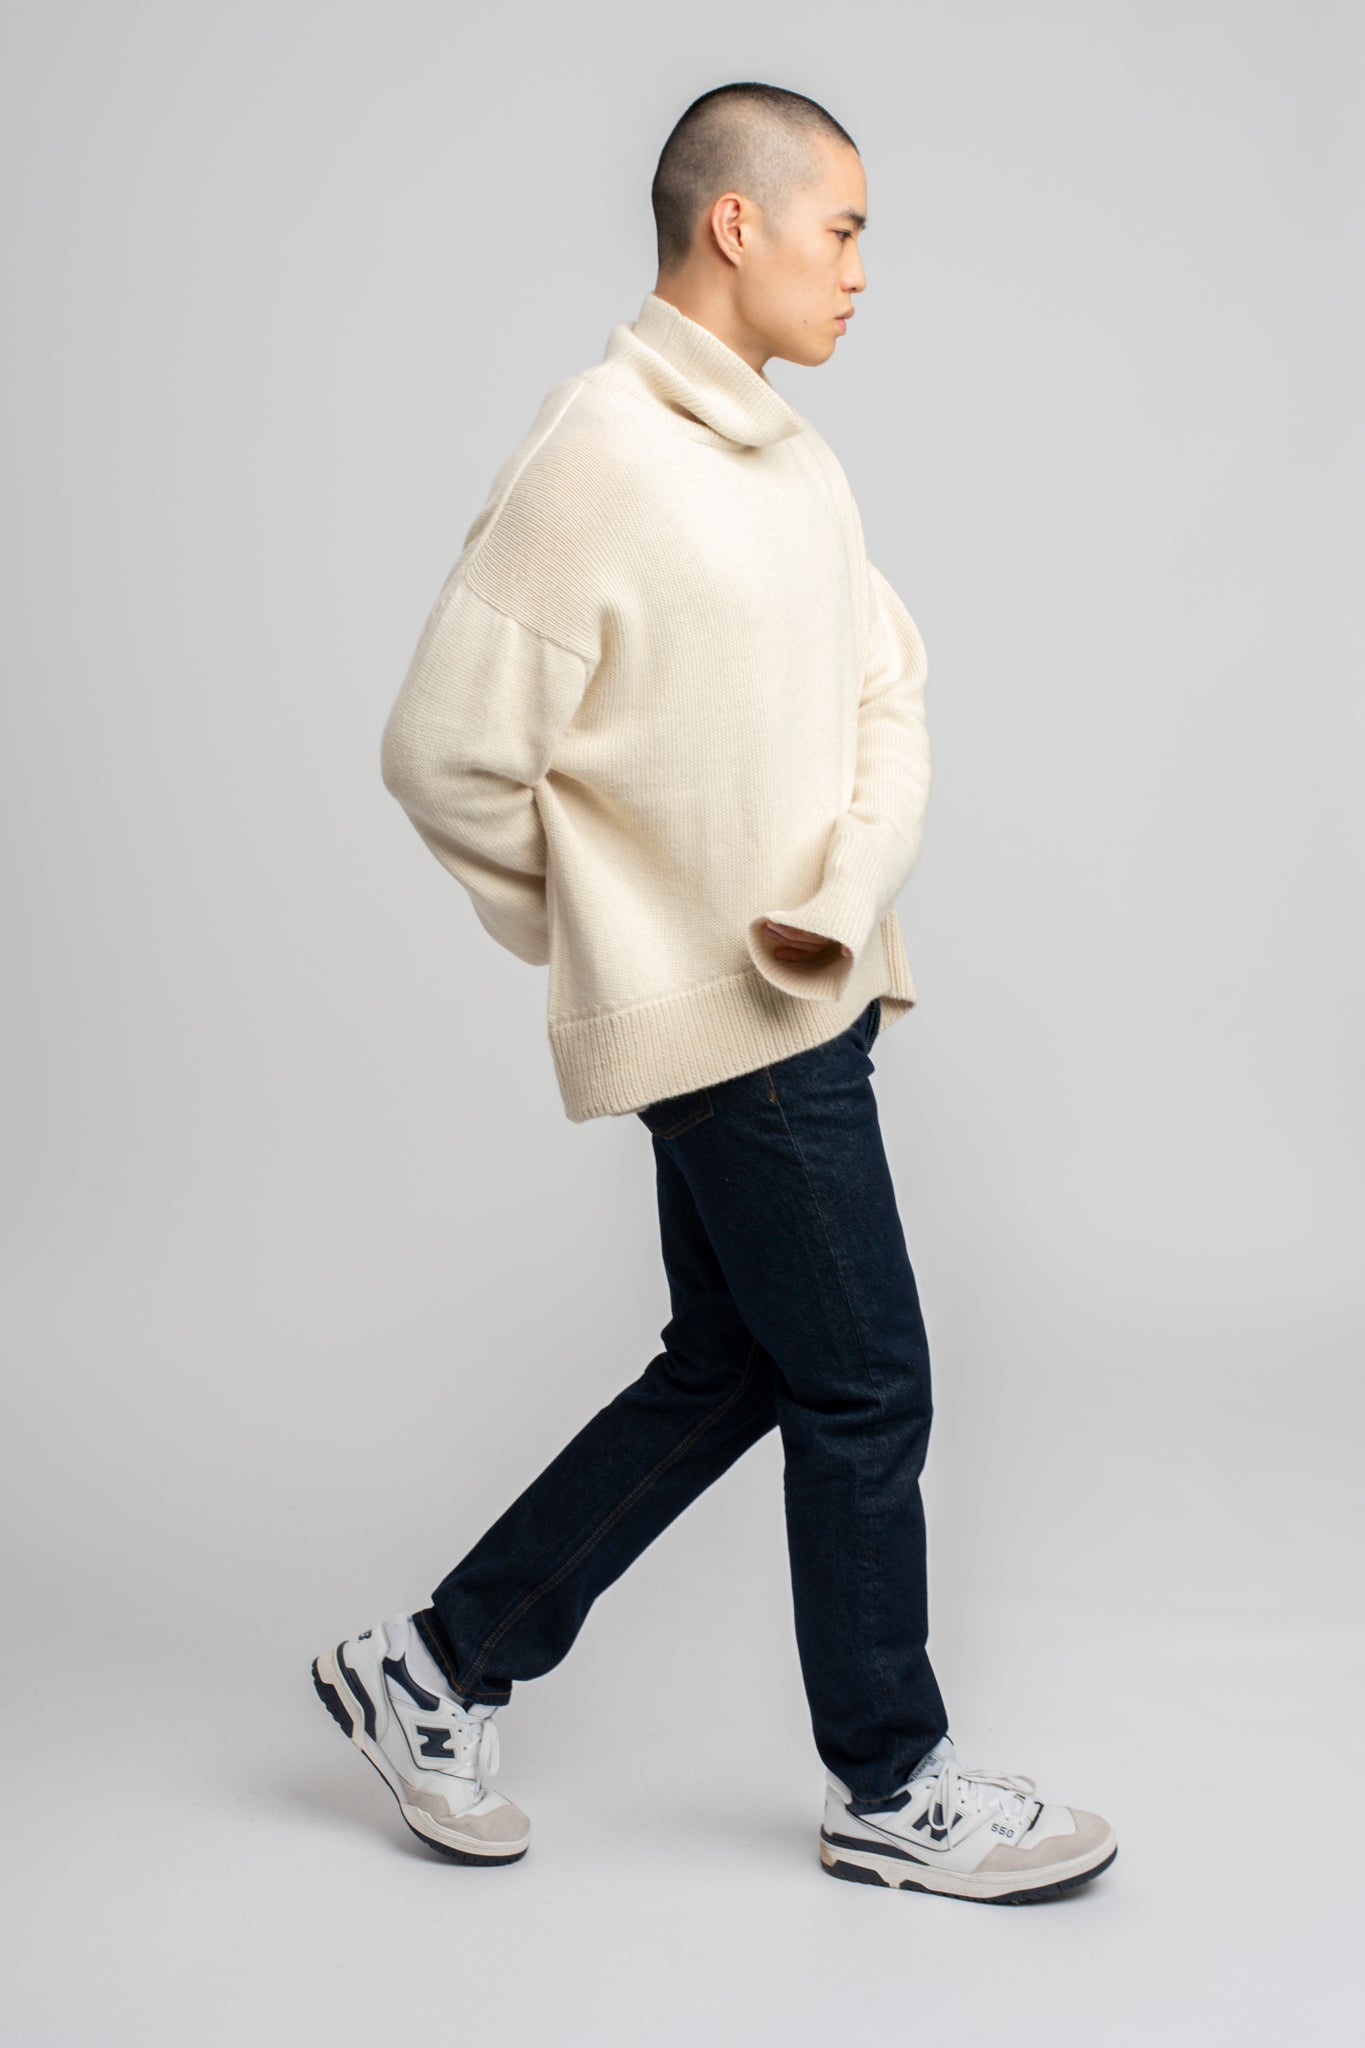 Model wearing turtleneck oversized sweater in white alpaca wool, standing side